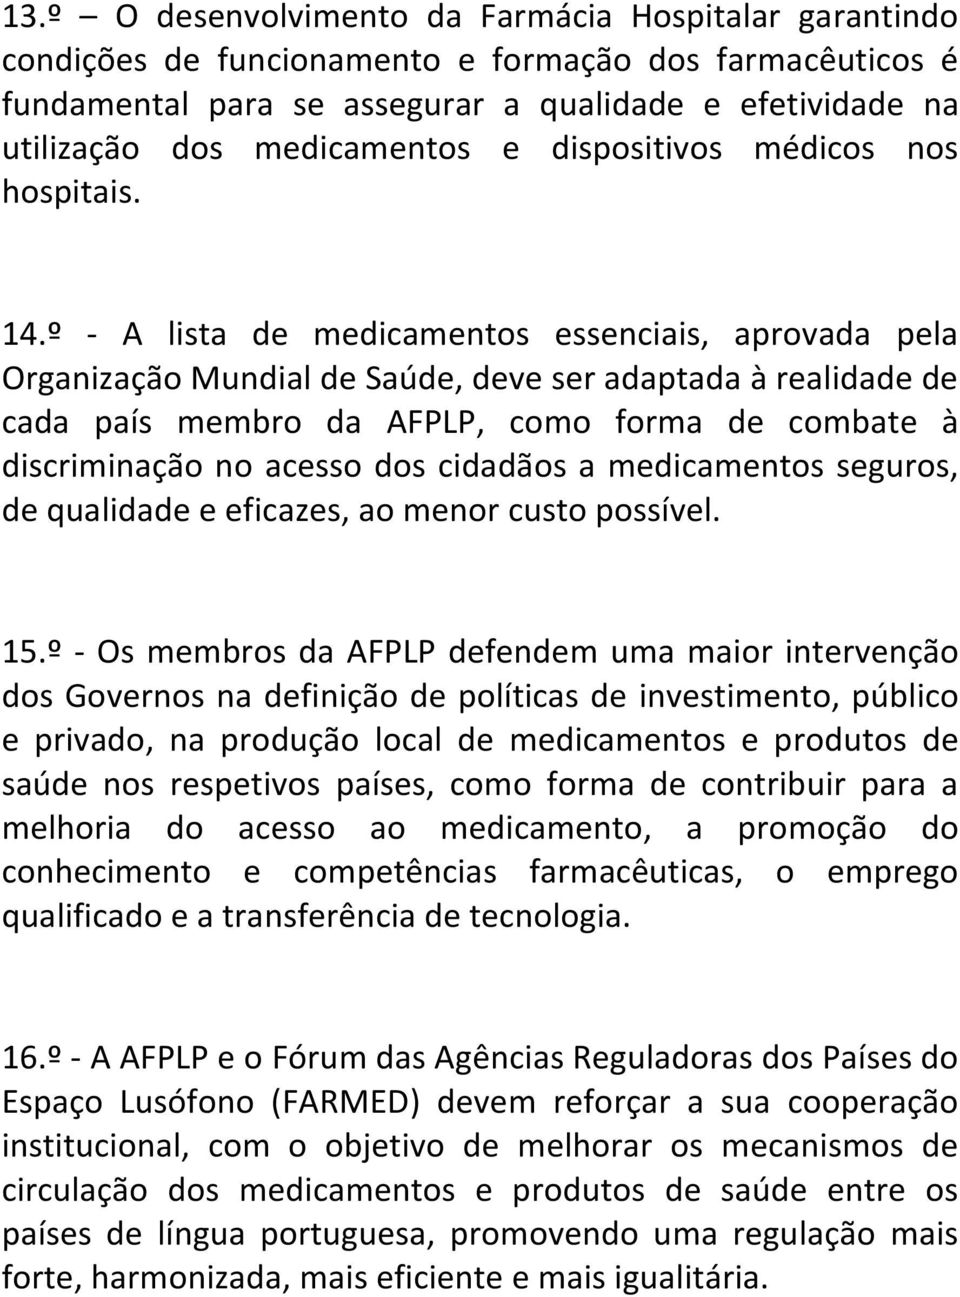 º - A lista de medicamentos essenciais, aprovada pela Organização Mundial de Saúde, deve ser adaptada à realidade de cada país membro da AFPLP, como forma de combate à discriminação no acesso dos